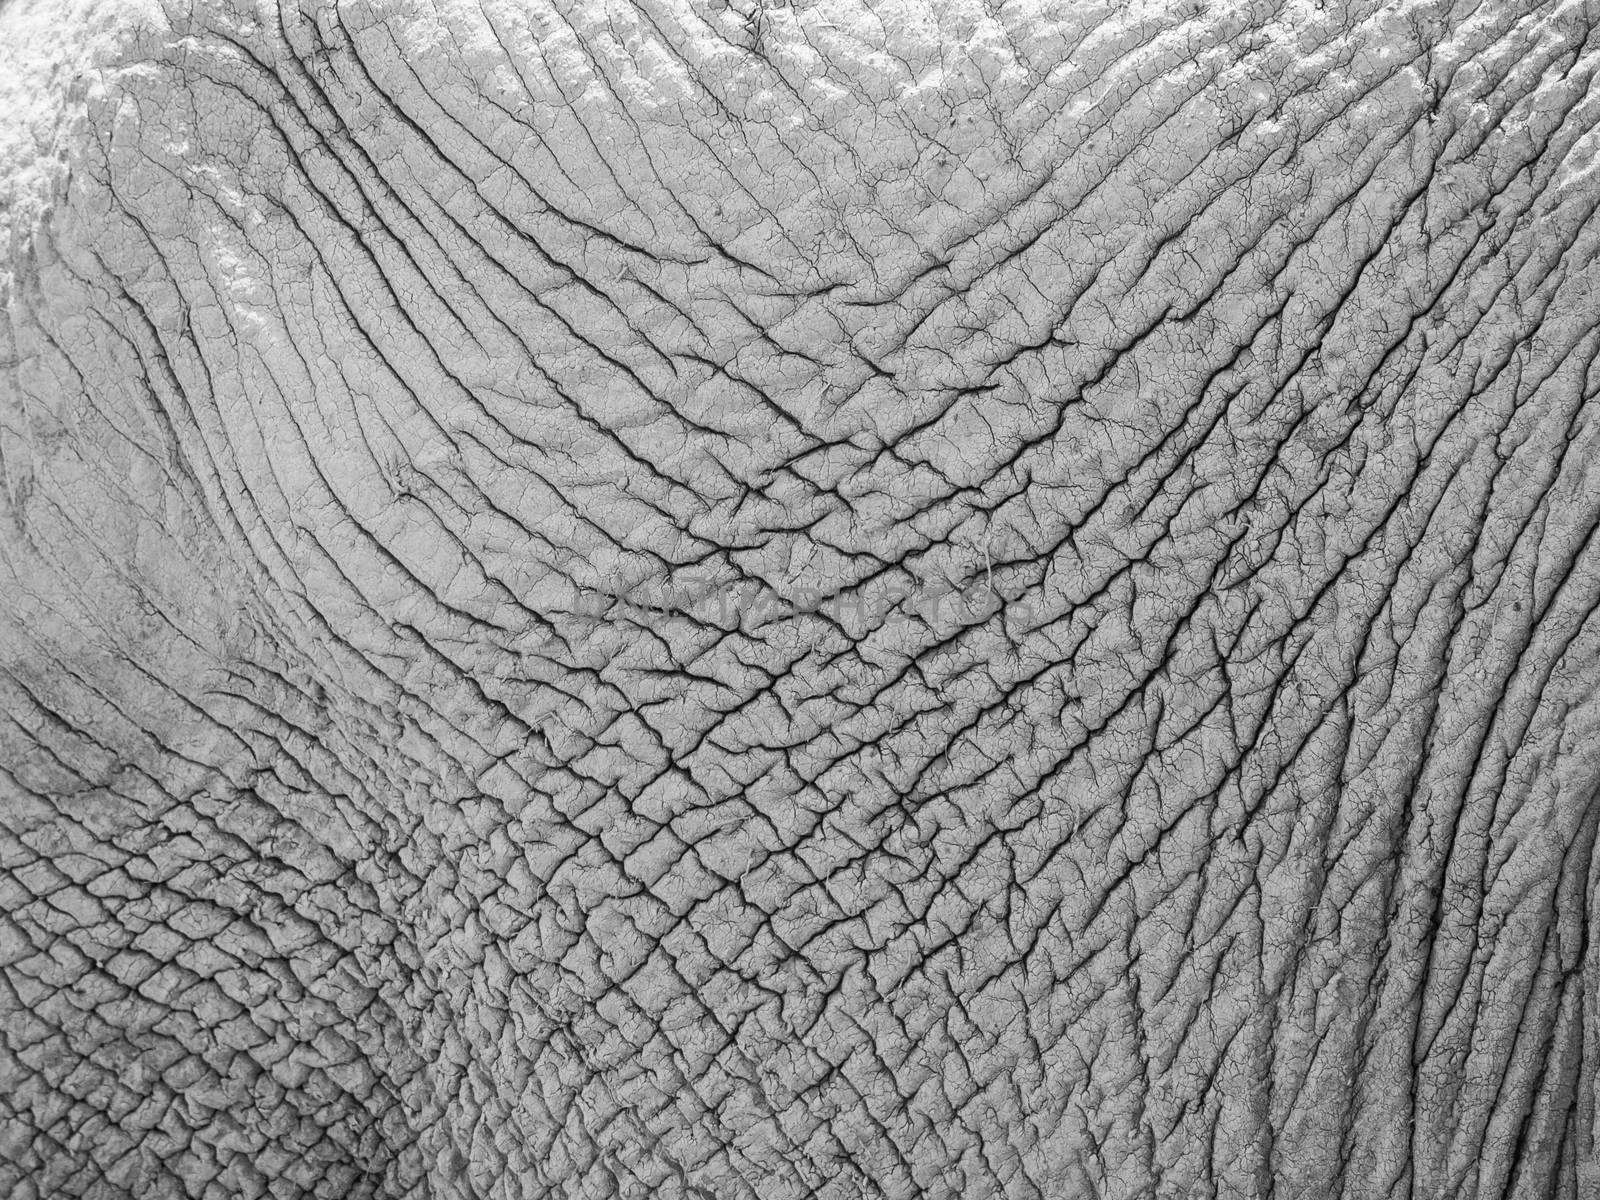 Elephant skin by pyty